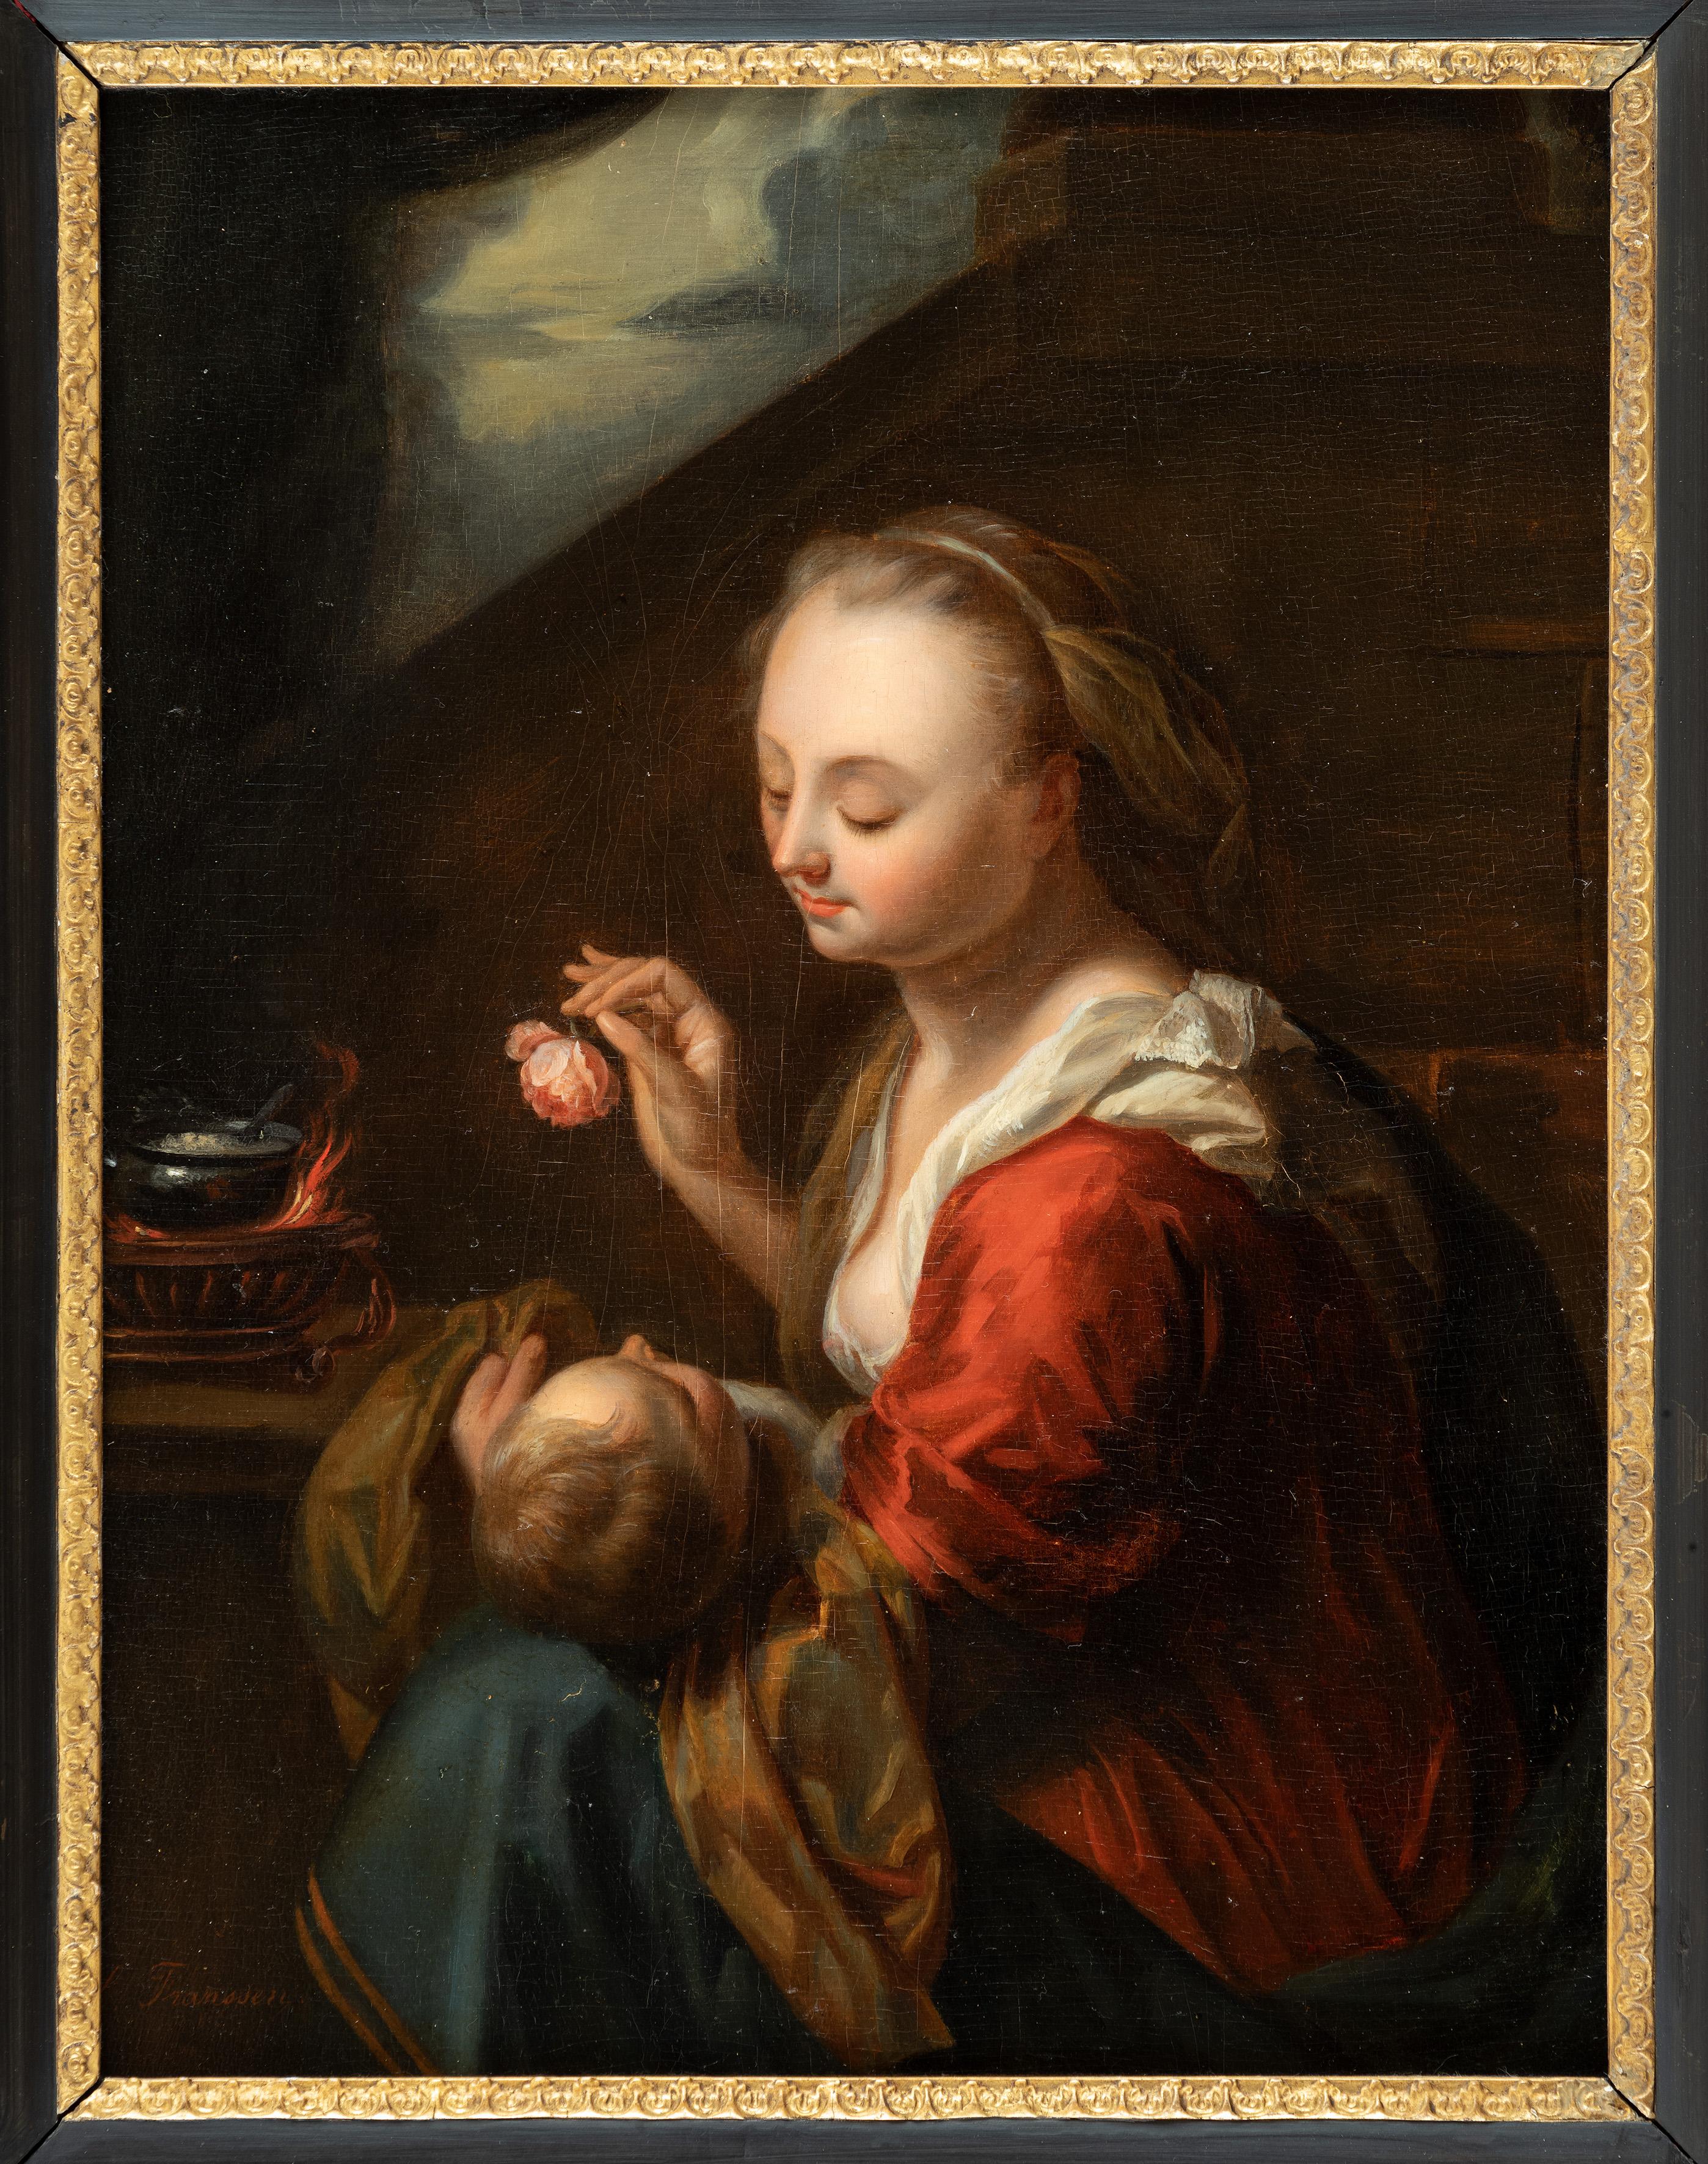 L. Franssen

Mutter und Kind mit einer Rose
Öl auf Holz, 44,5 x 33,5 cm
unterzeichnet

Der Künstler dieses herausragenden Gemäldes ist bisher völlig unbekannt. Es gibt keinen Eintrag unter 